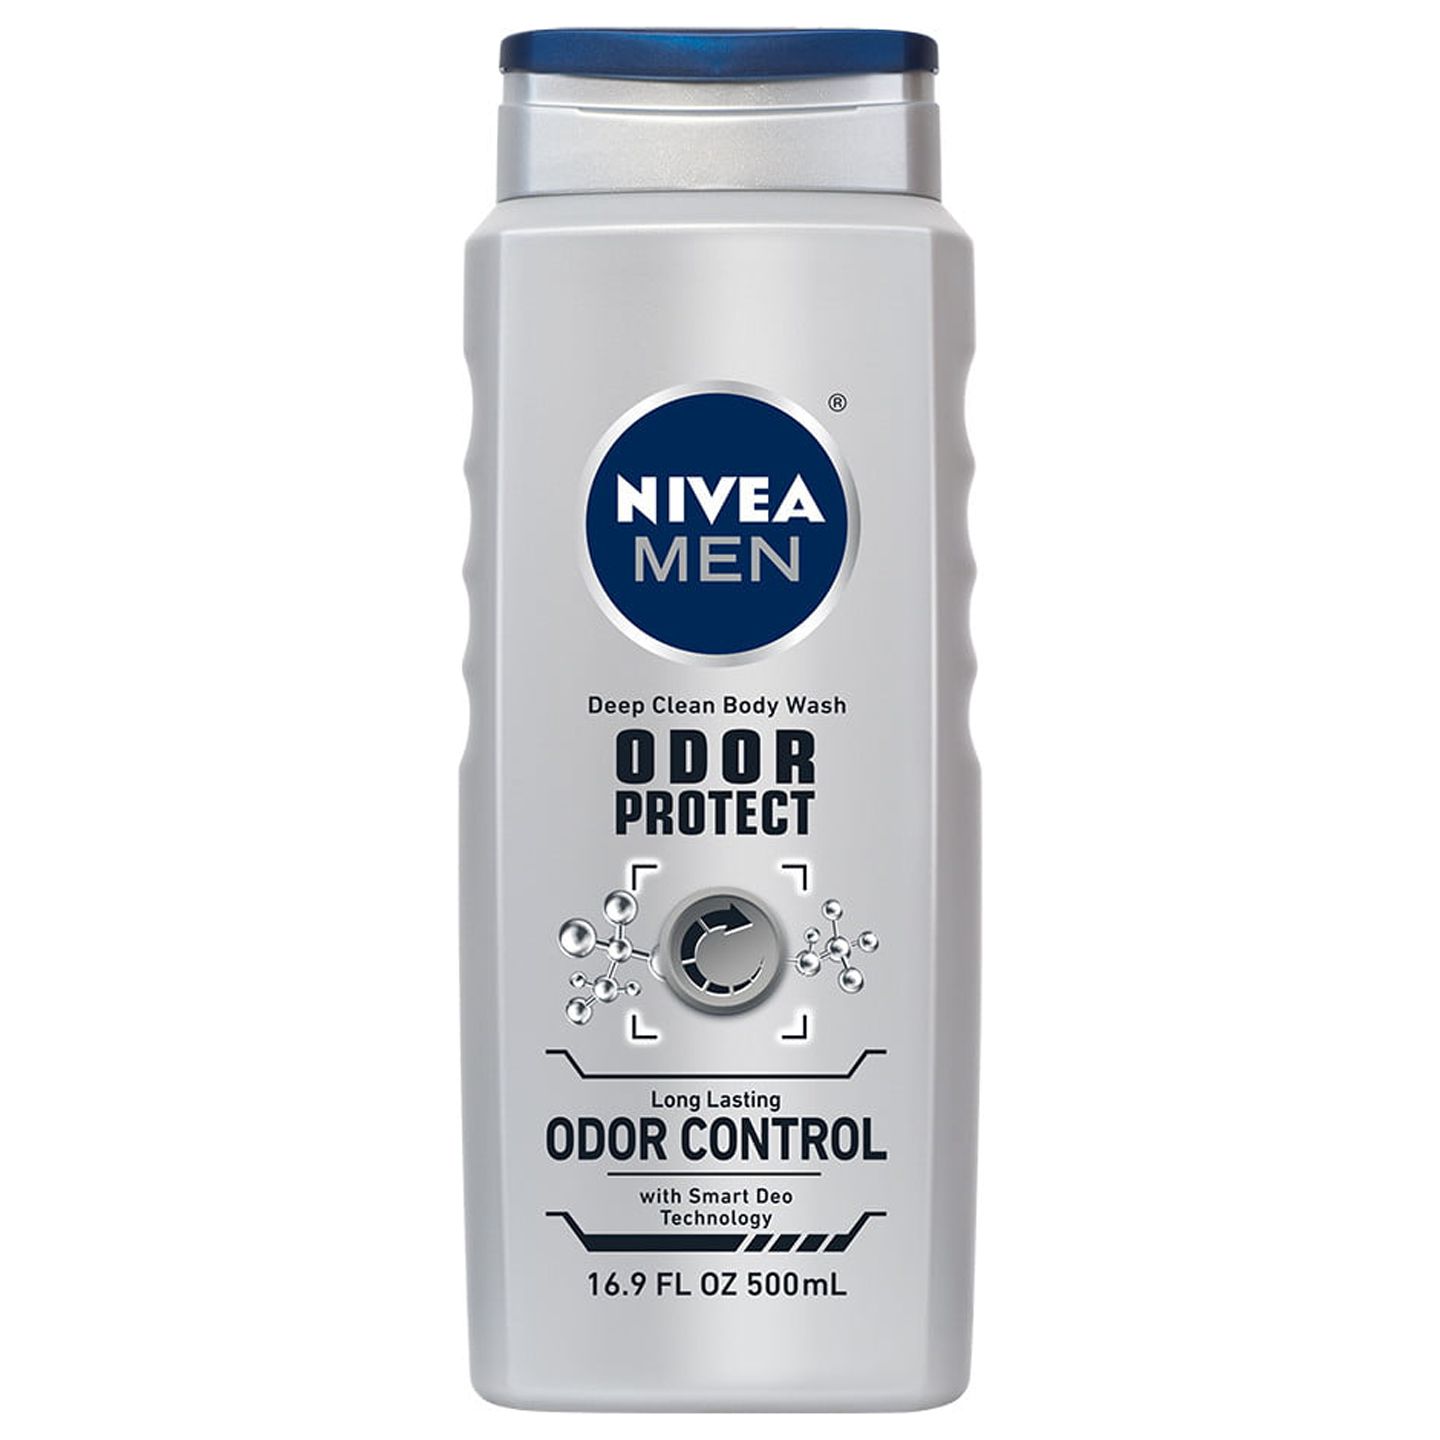 NIVEA Men Odor Protect Body Wash 16.9 fl. oz. - image 1 of 3